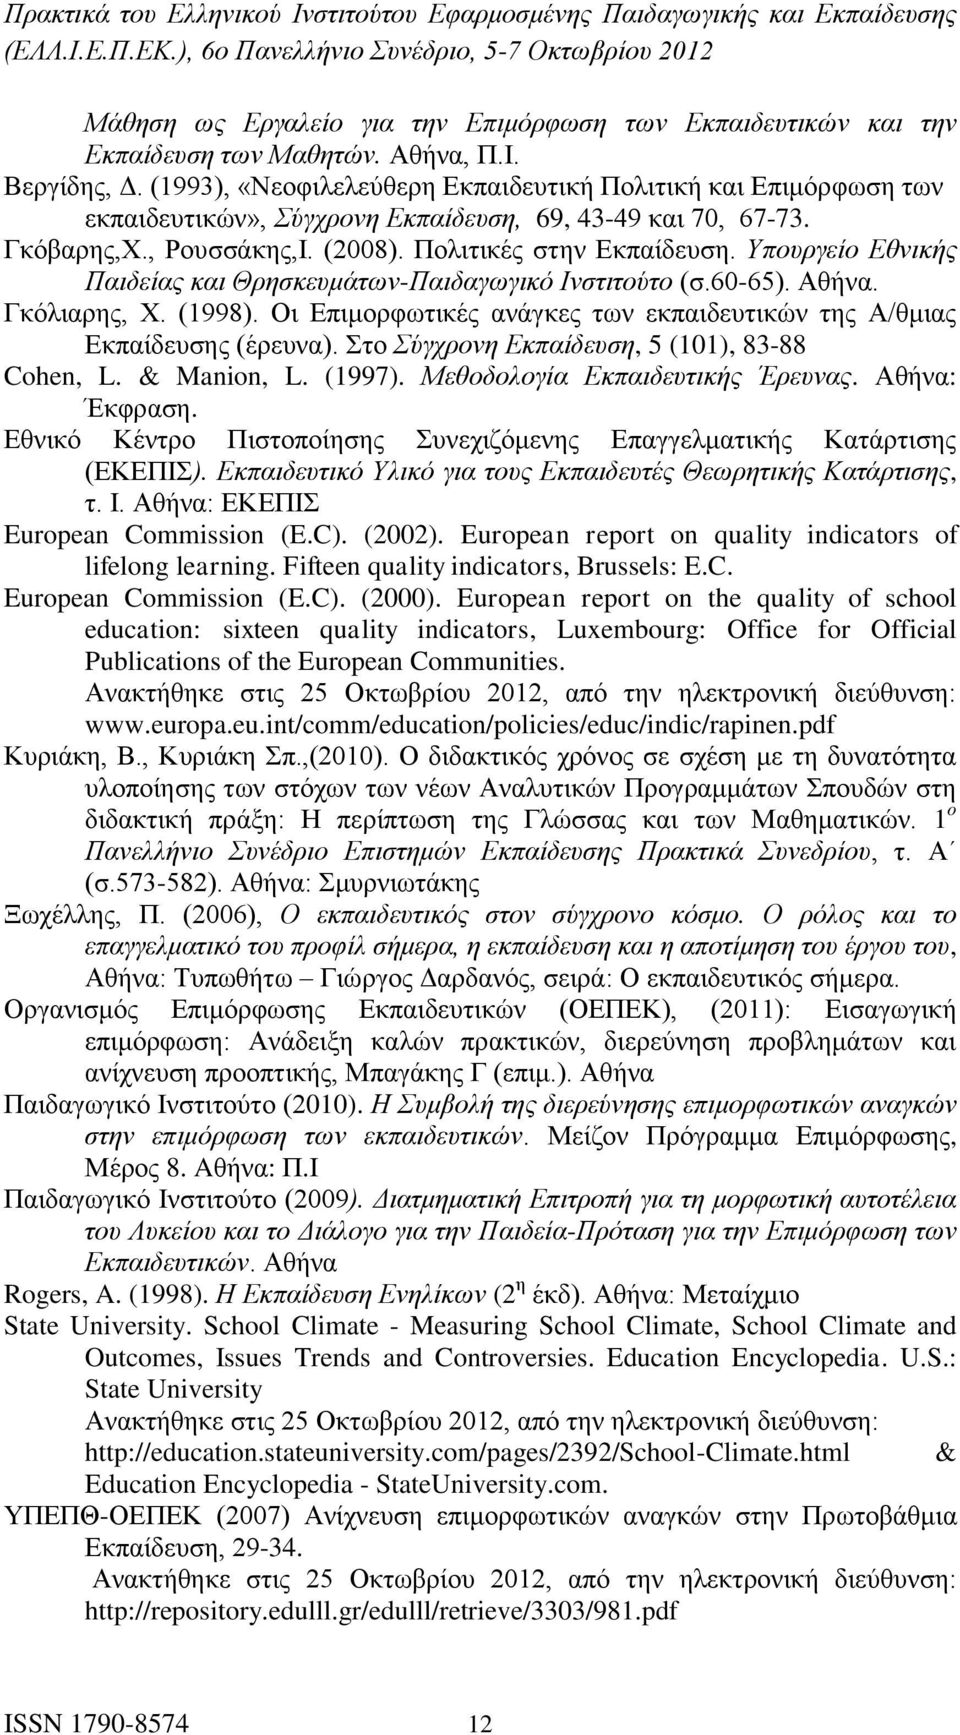 Υπουργείο Εθνικής Παιδείας και Θρησκευμάτων-Παιδαγωγικό Ινστιτούτο (σ.60-65). Αθήνα. Γκόλιαρης, Χ. (1998). Οι Επιμορφωτικές ανάγκες των εκπαιδευτικών της Α/θμιας Εκπαίδευσης (έρευνα).